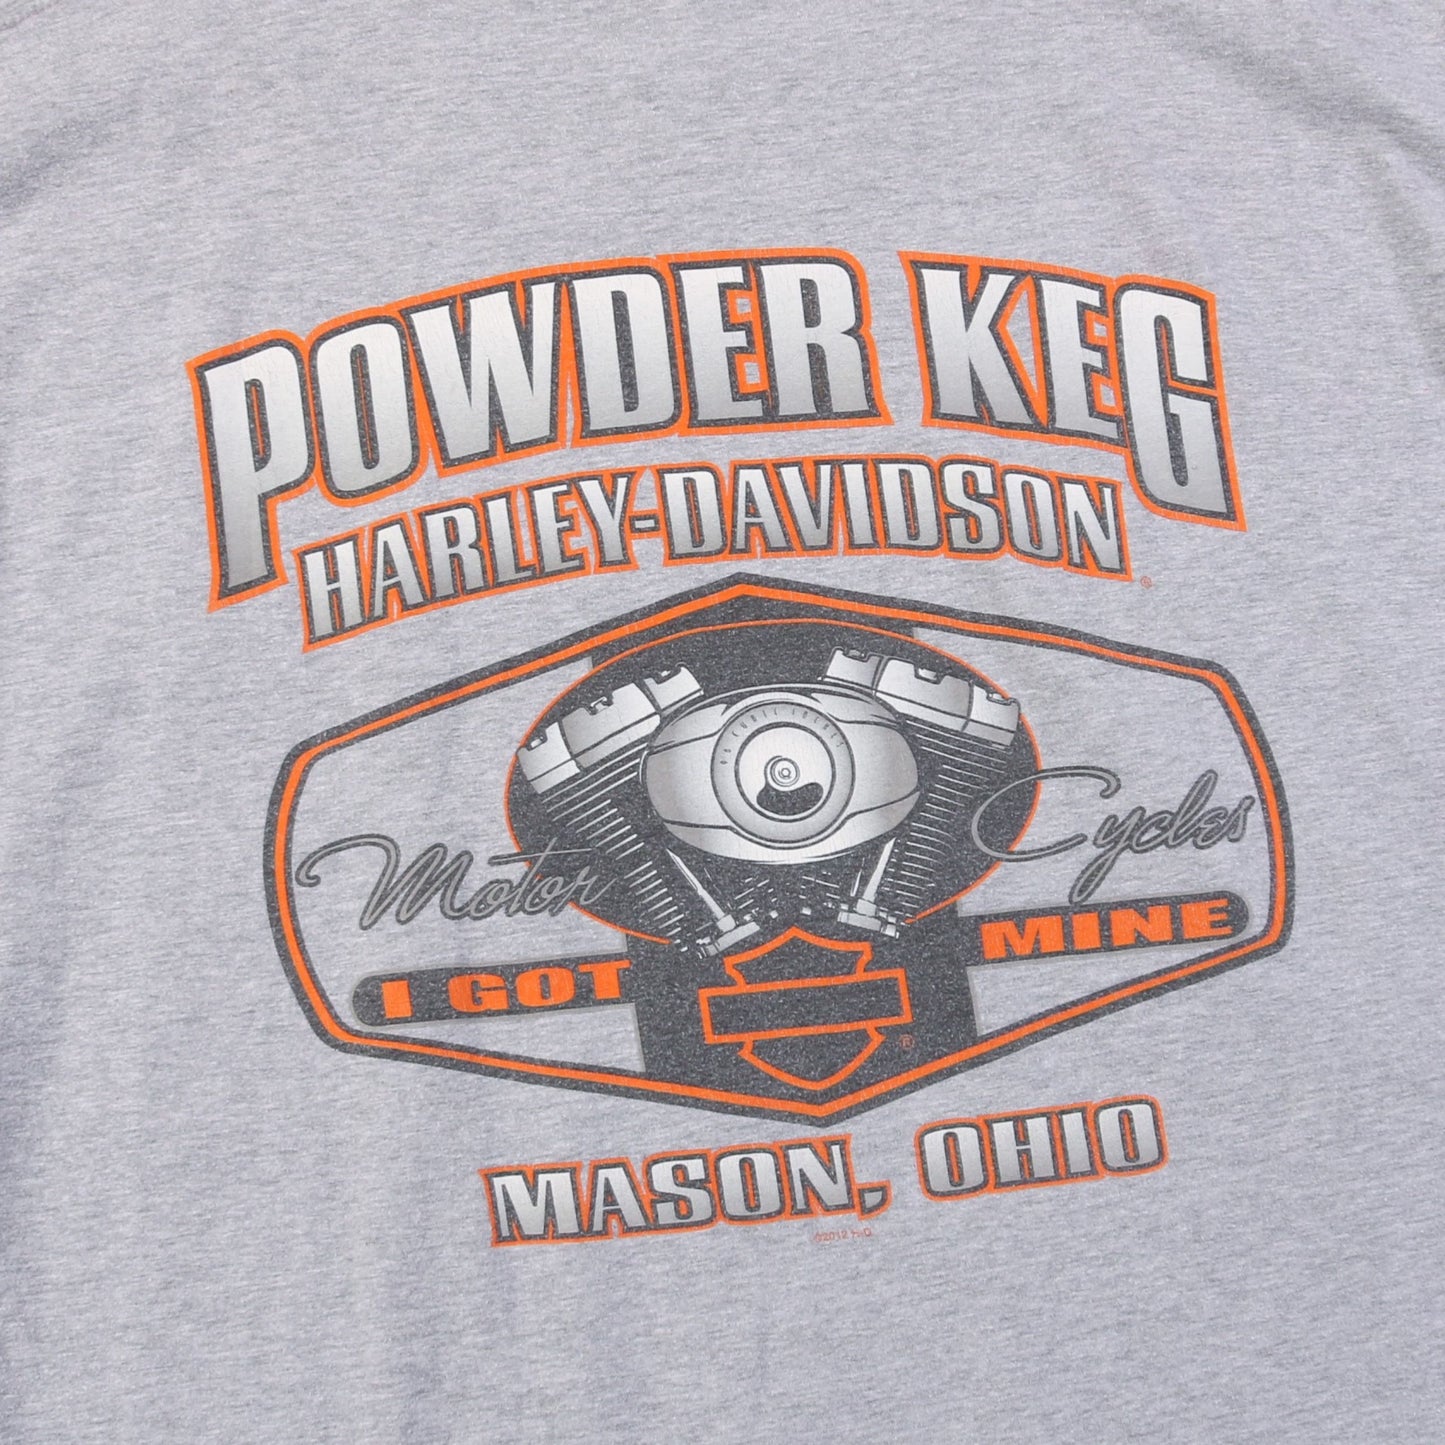 'Powder Keg Ohio' T-Shirt - American Madness